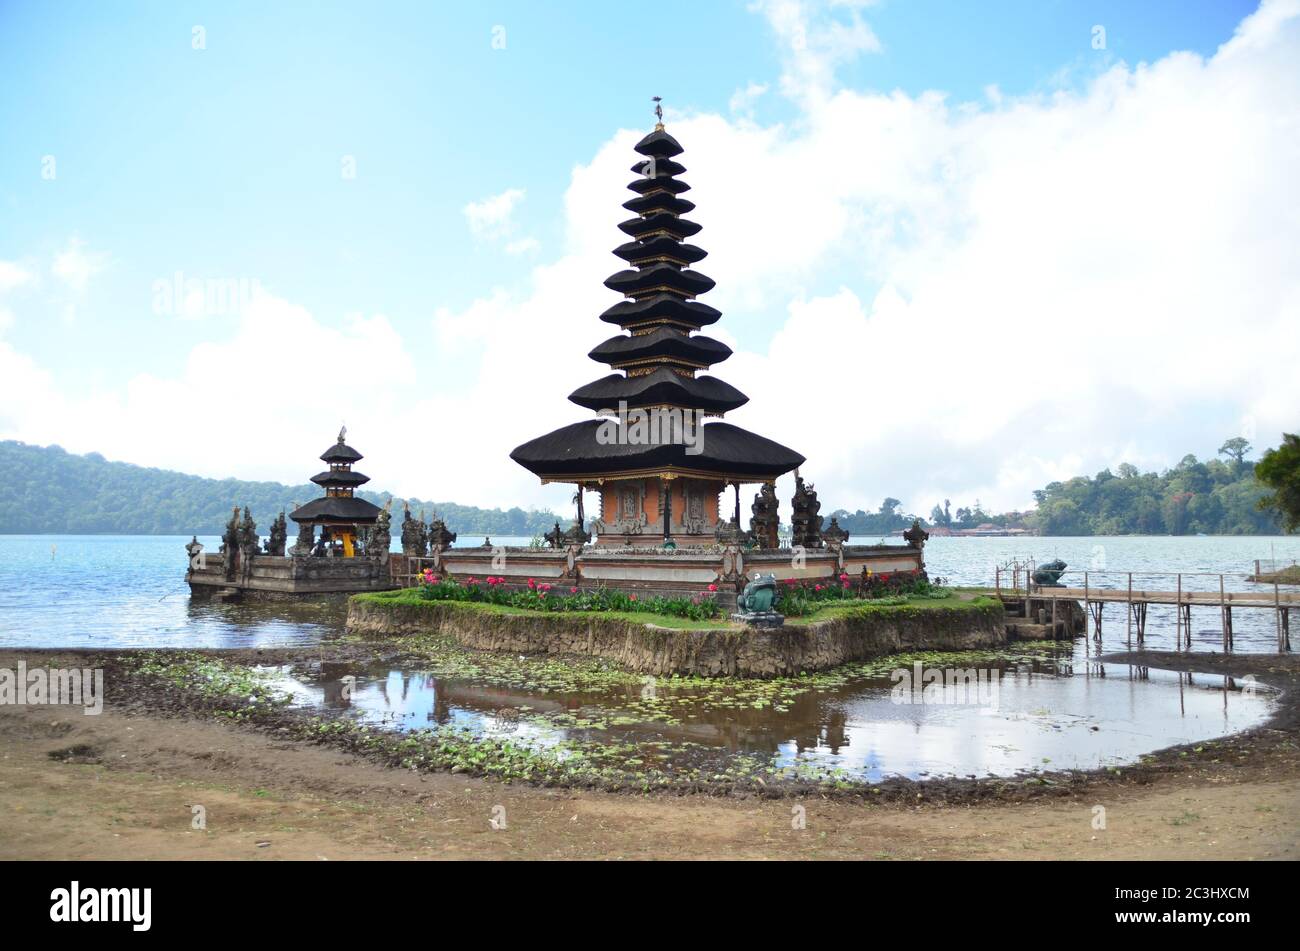 Pura Ulun Danu Beratan liegt am Ufer des Beratan Sees in Bali, Indonesien. Es wird angenommen, dass es 1663 erbaut wurde, und ist ein großer hinduistischer schiwaitischer Tempel. Stockfoto